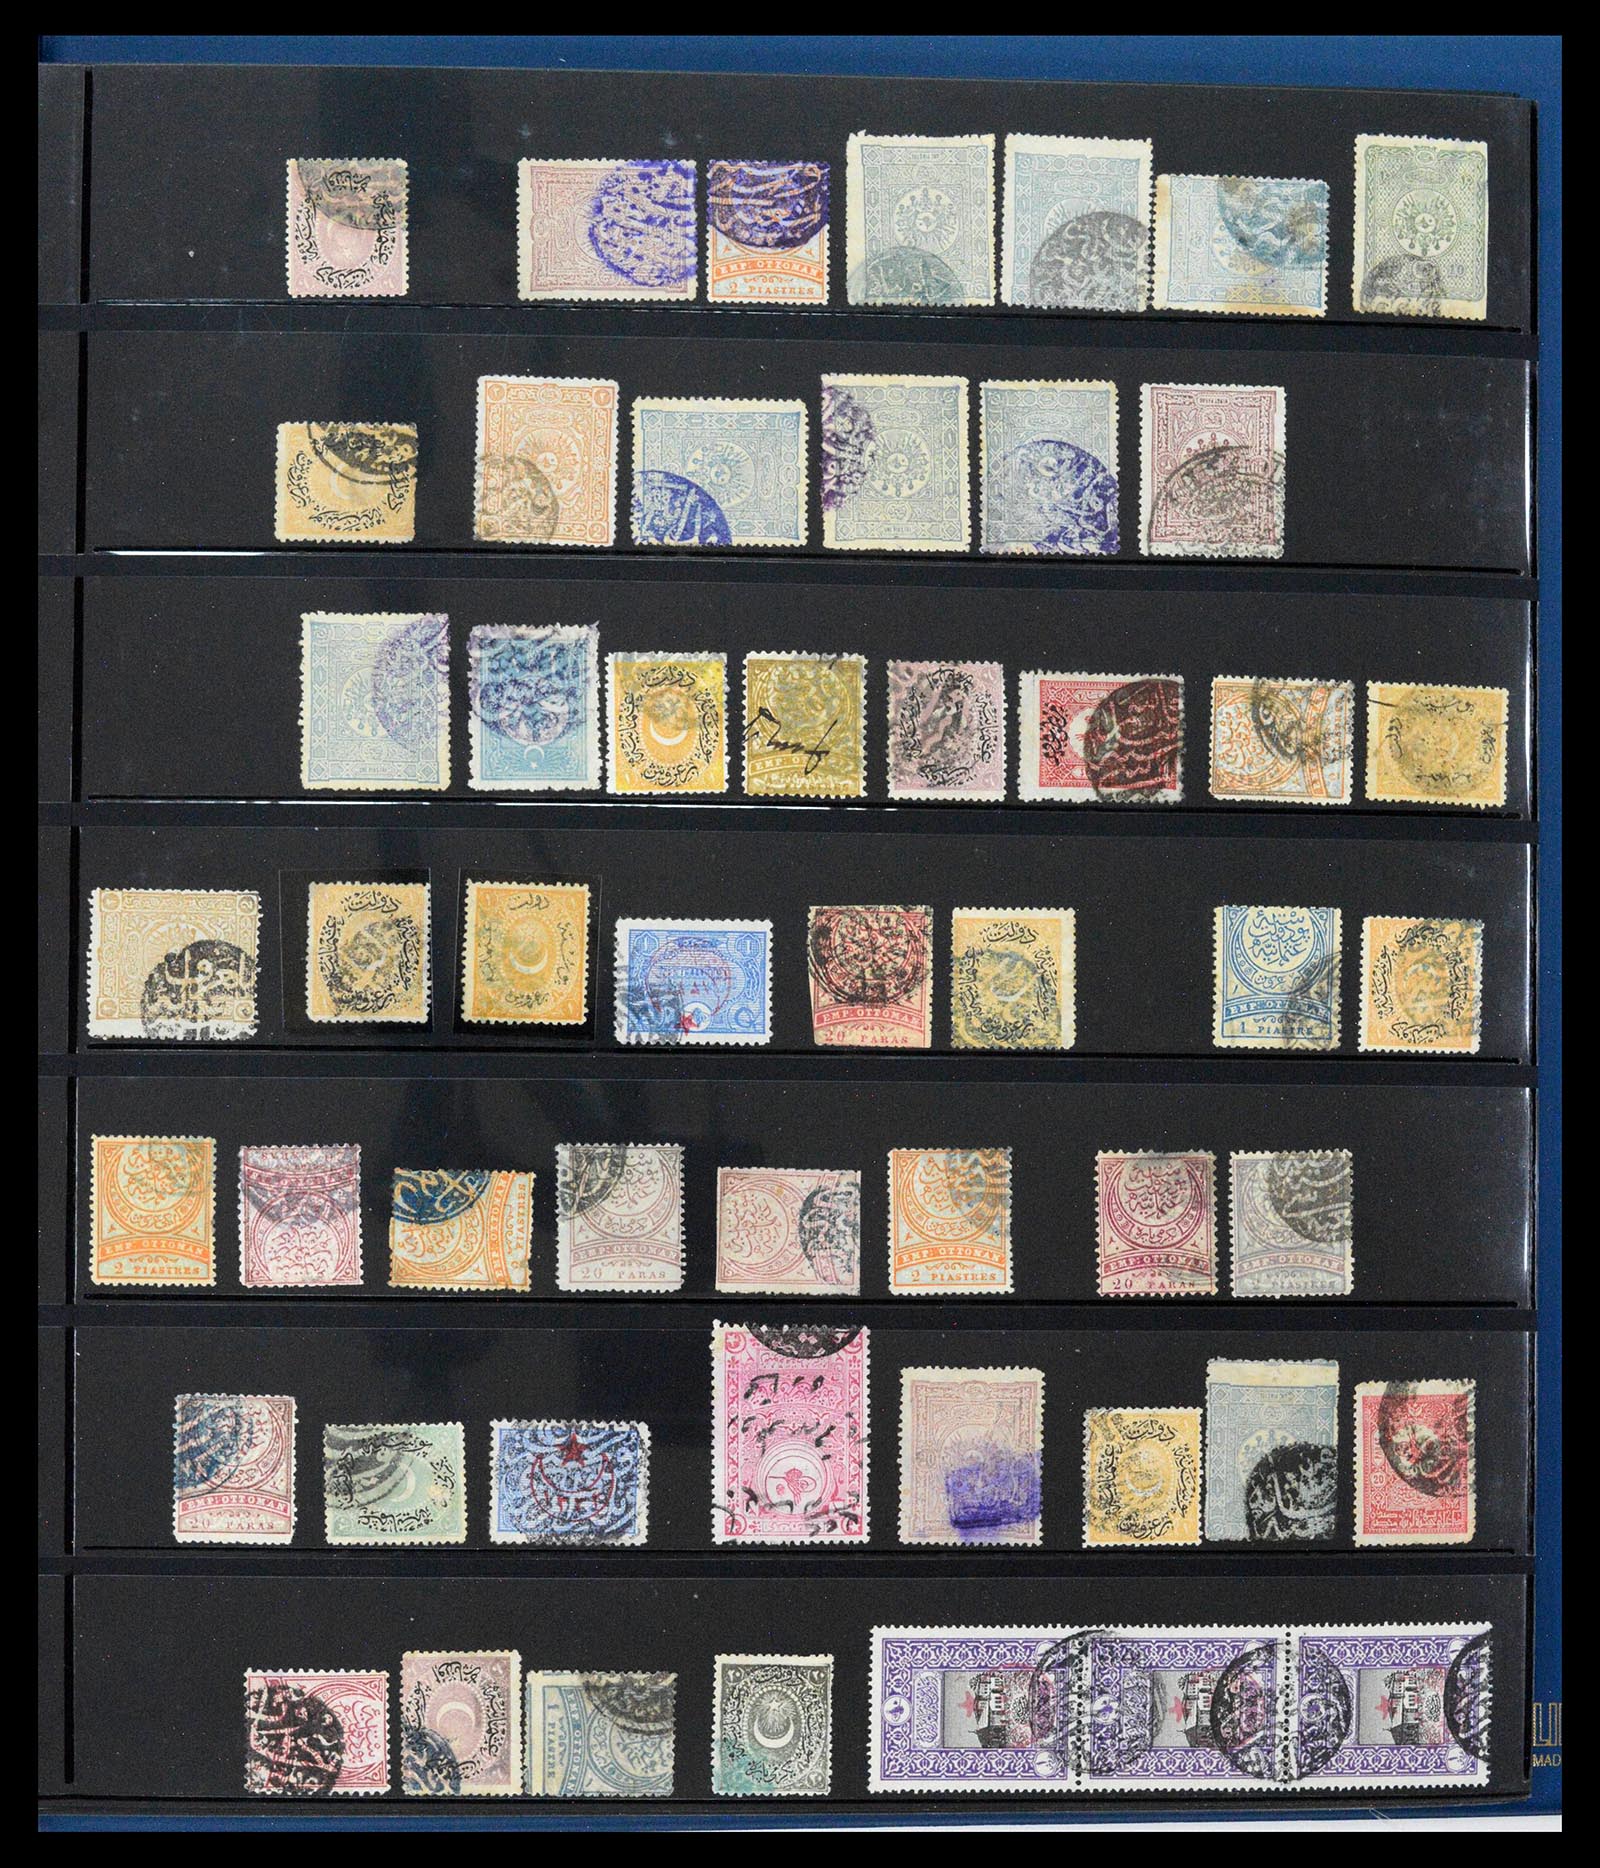 39345 0421 - Postzegelverzameling 39345 Turkije supercollectie stempels 1865-1930.